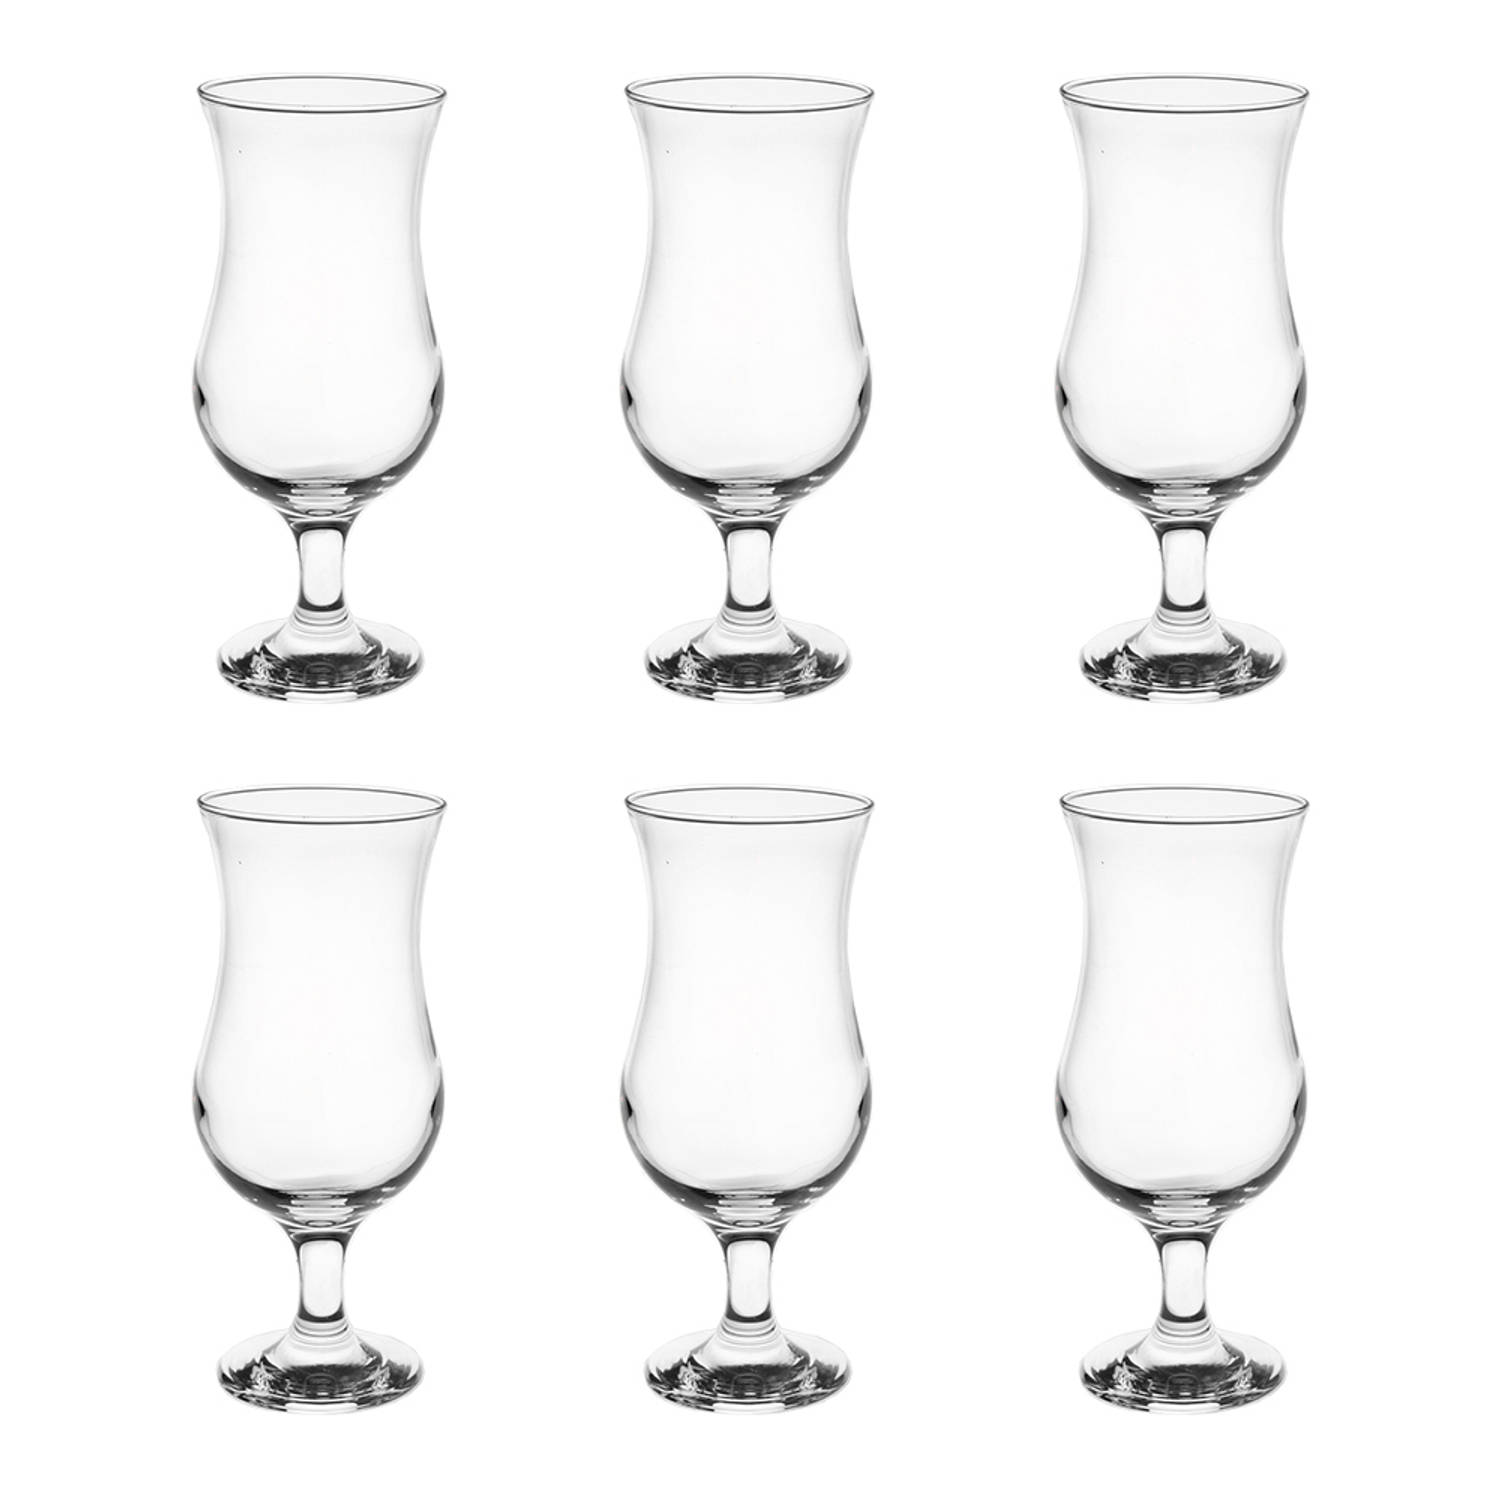 HAES DECO - Waterglas, Drinkglas set van 6 glazen - inhoud glas 420 ml - formaat glas Ø 8x19 cm - Waterglazen, Drinkglazen